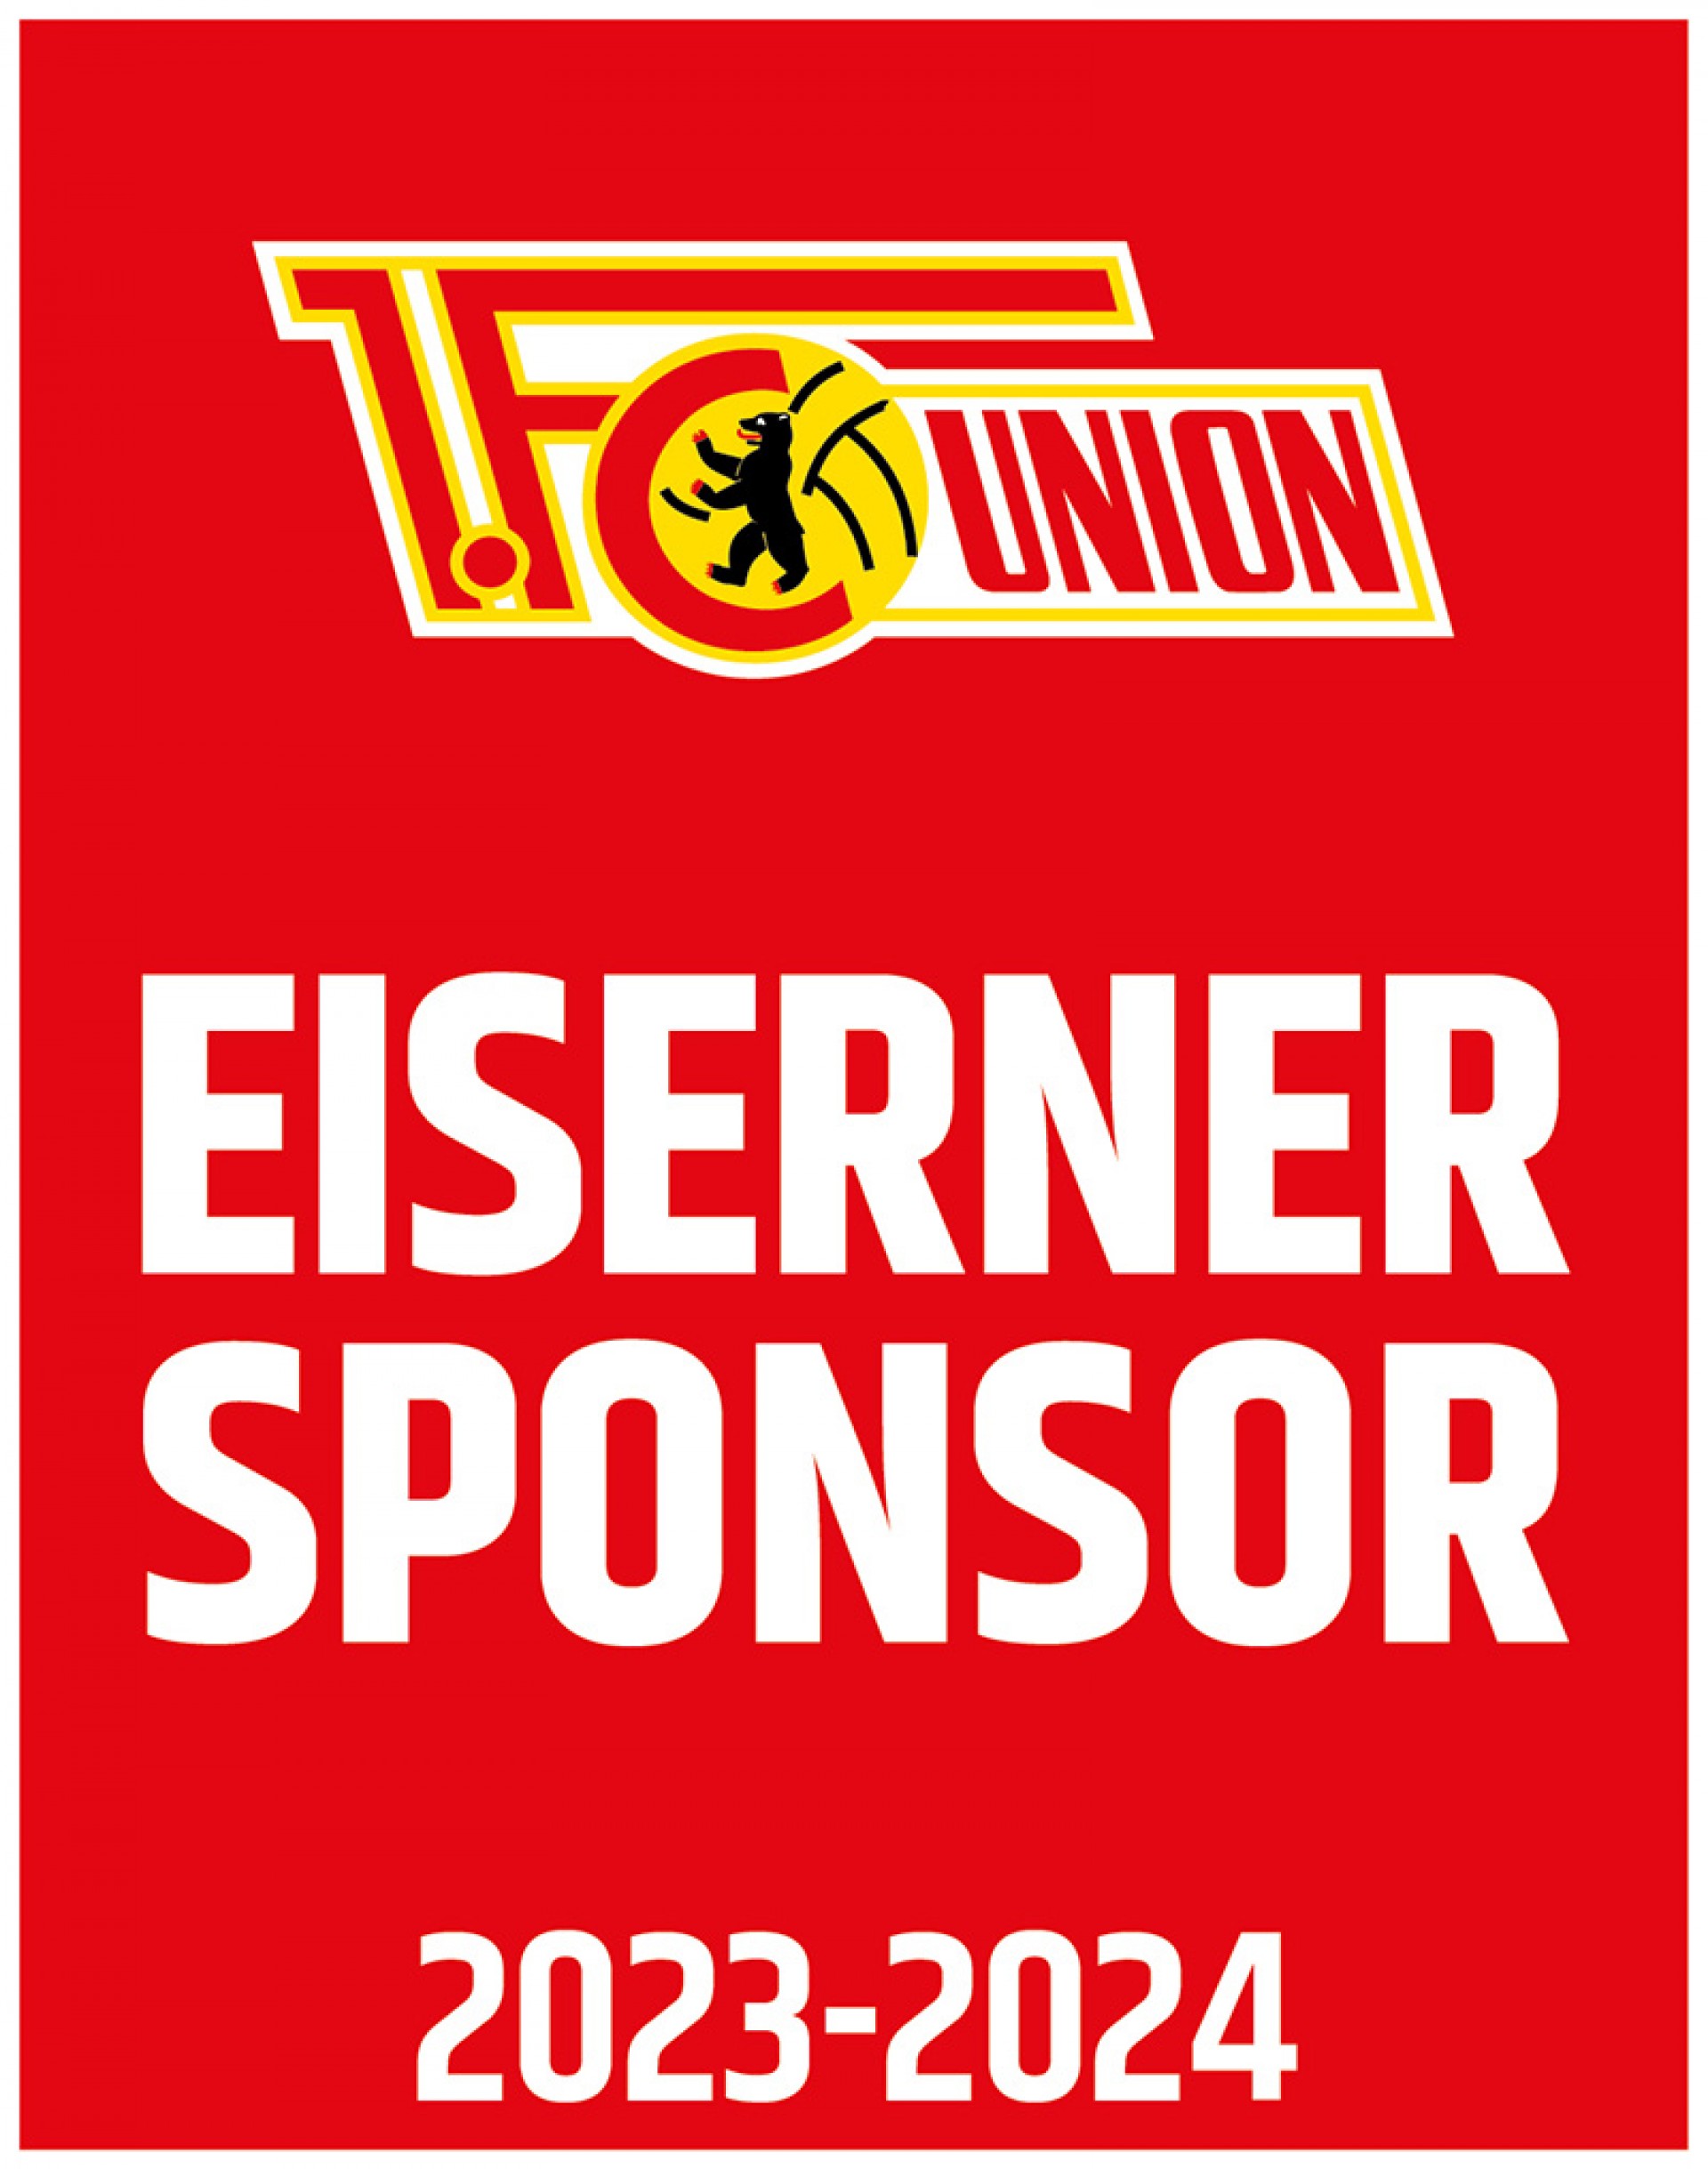 Eiserner Sponsor 2023-2024